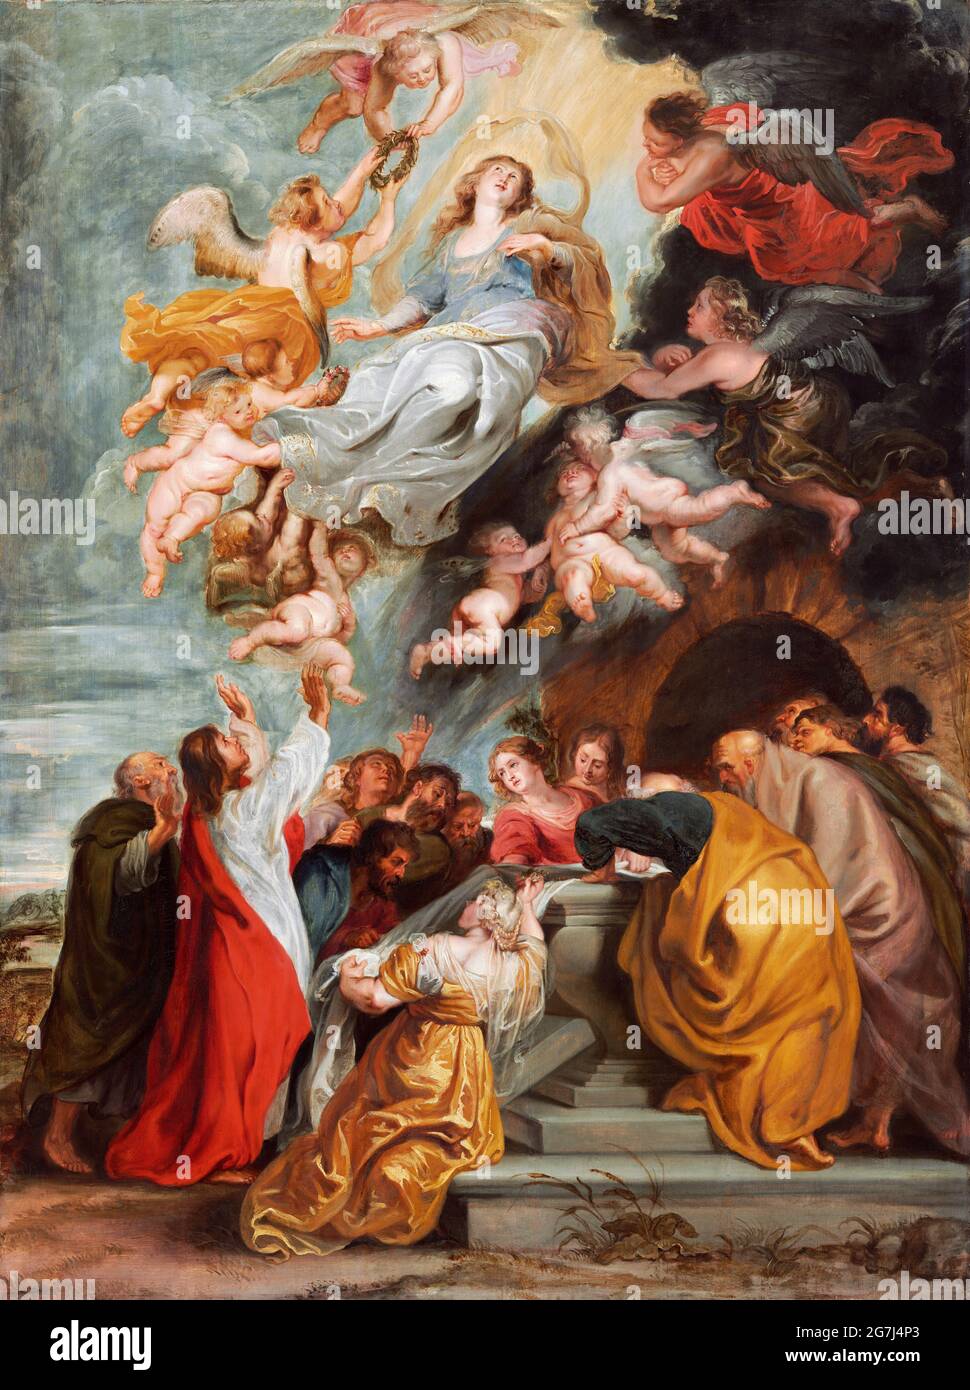 L'Assomption de la Vierge Marie par Peter Paul Rubens (1577-1640), huile sur panneau, mi-1620. Galerie nationale d'art, Washington Banque D'Images